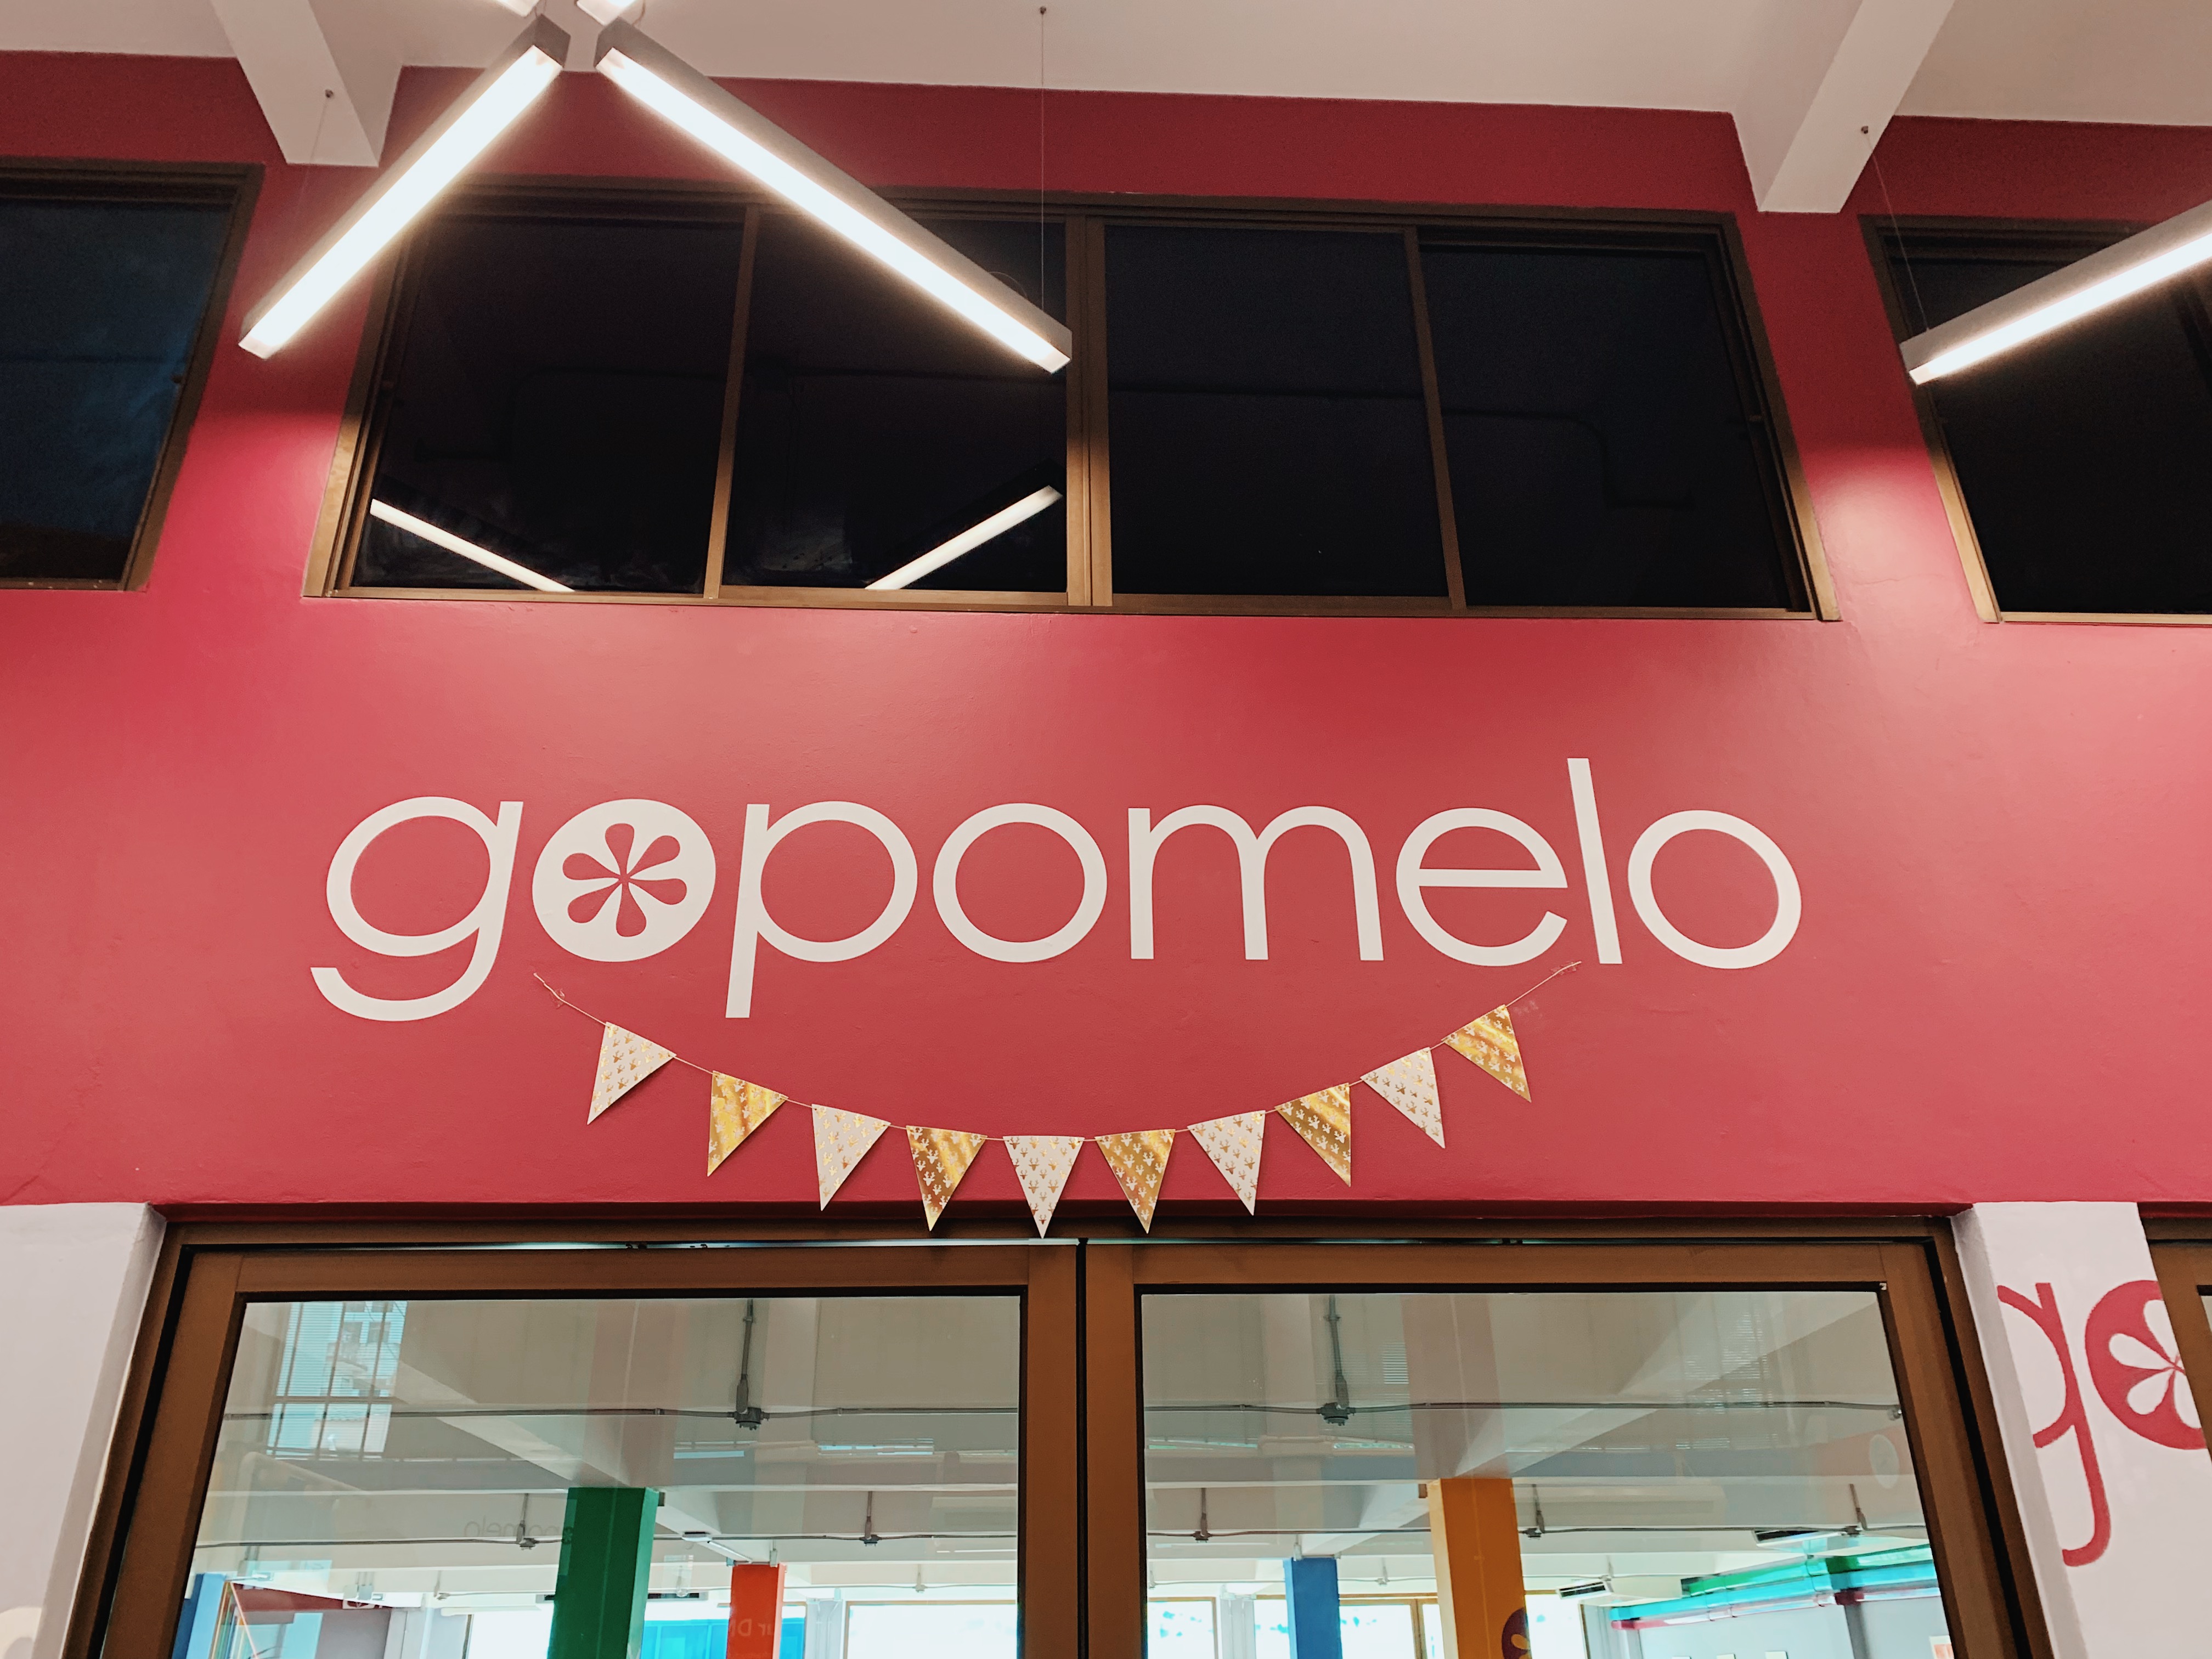 บริษัทไอทีทำงานด้วยแล้วเครียดจริงหรือไม่!? พาชมออฟฟิศ GoPomelo หนึ่งในบริษัทไอทีที่ดีที่สุดในประเทศไทย